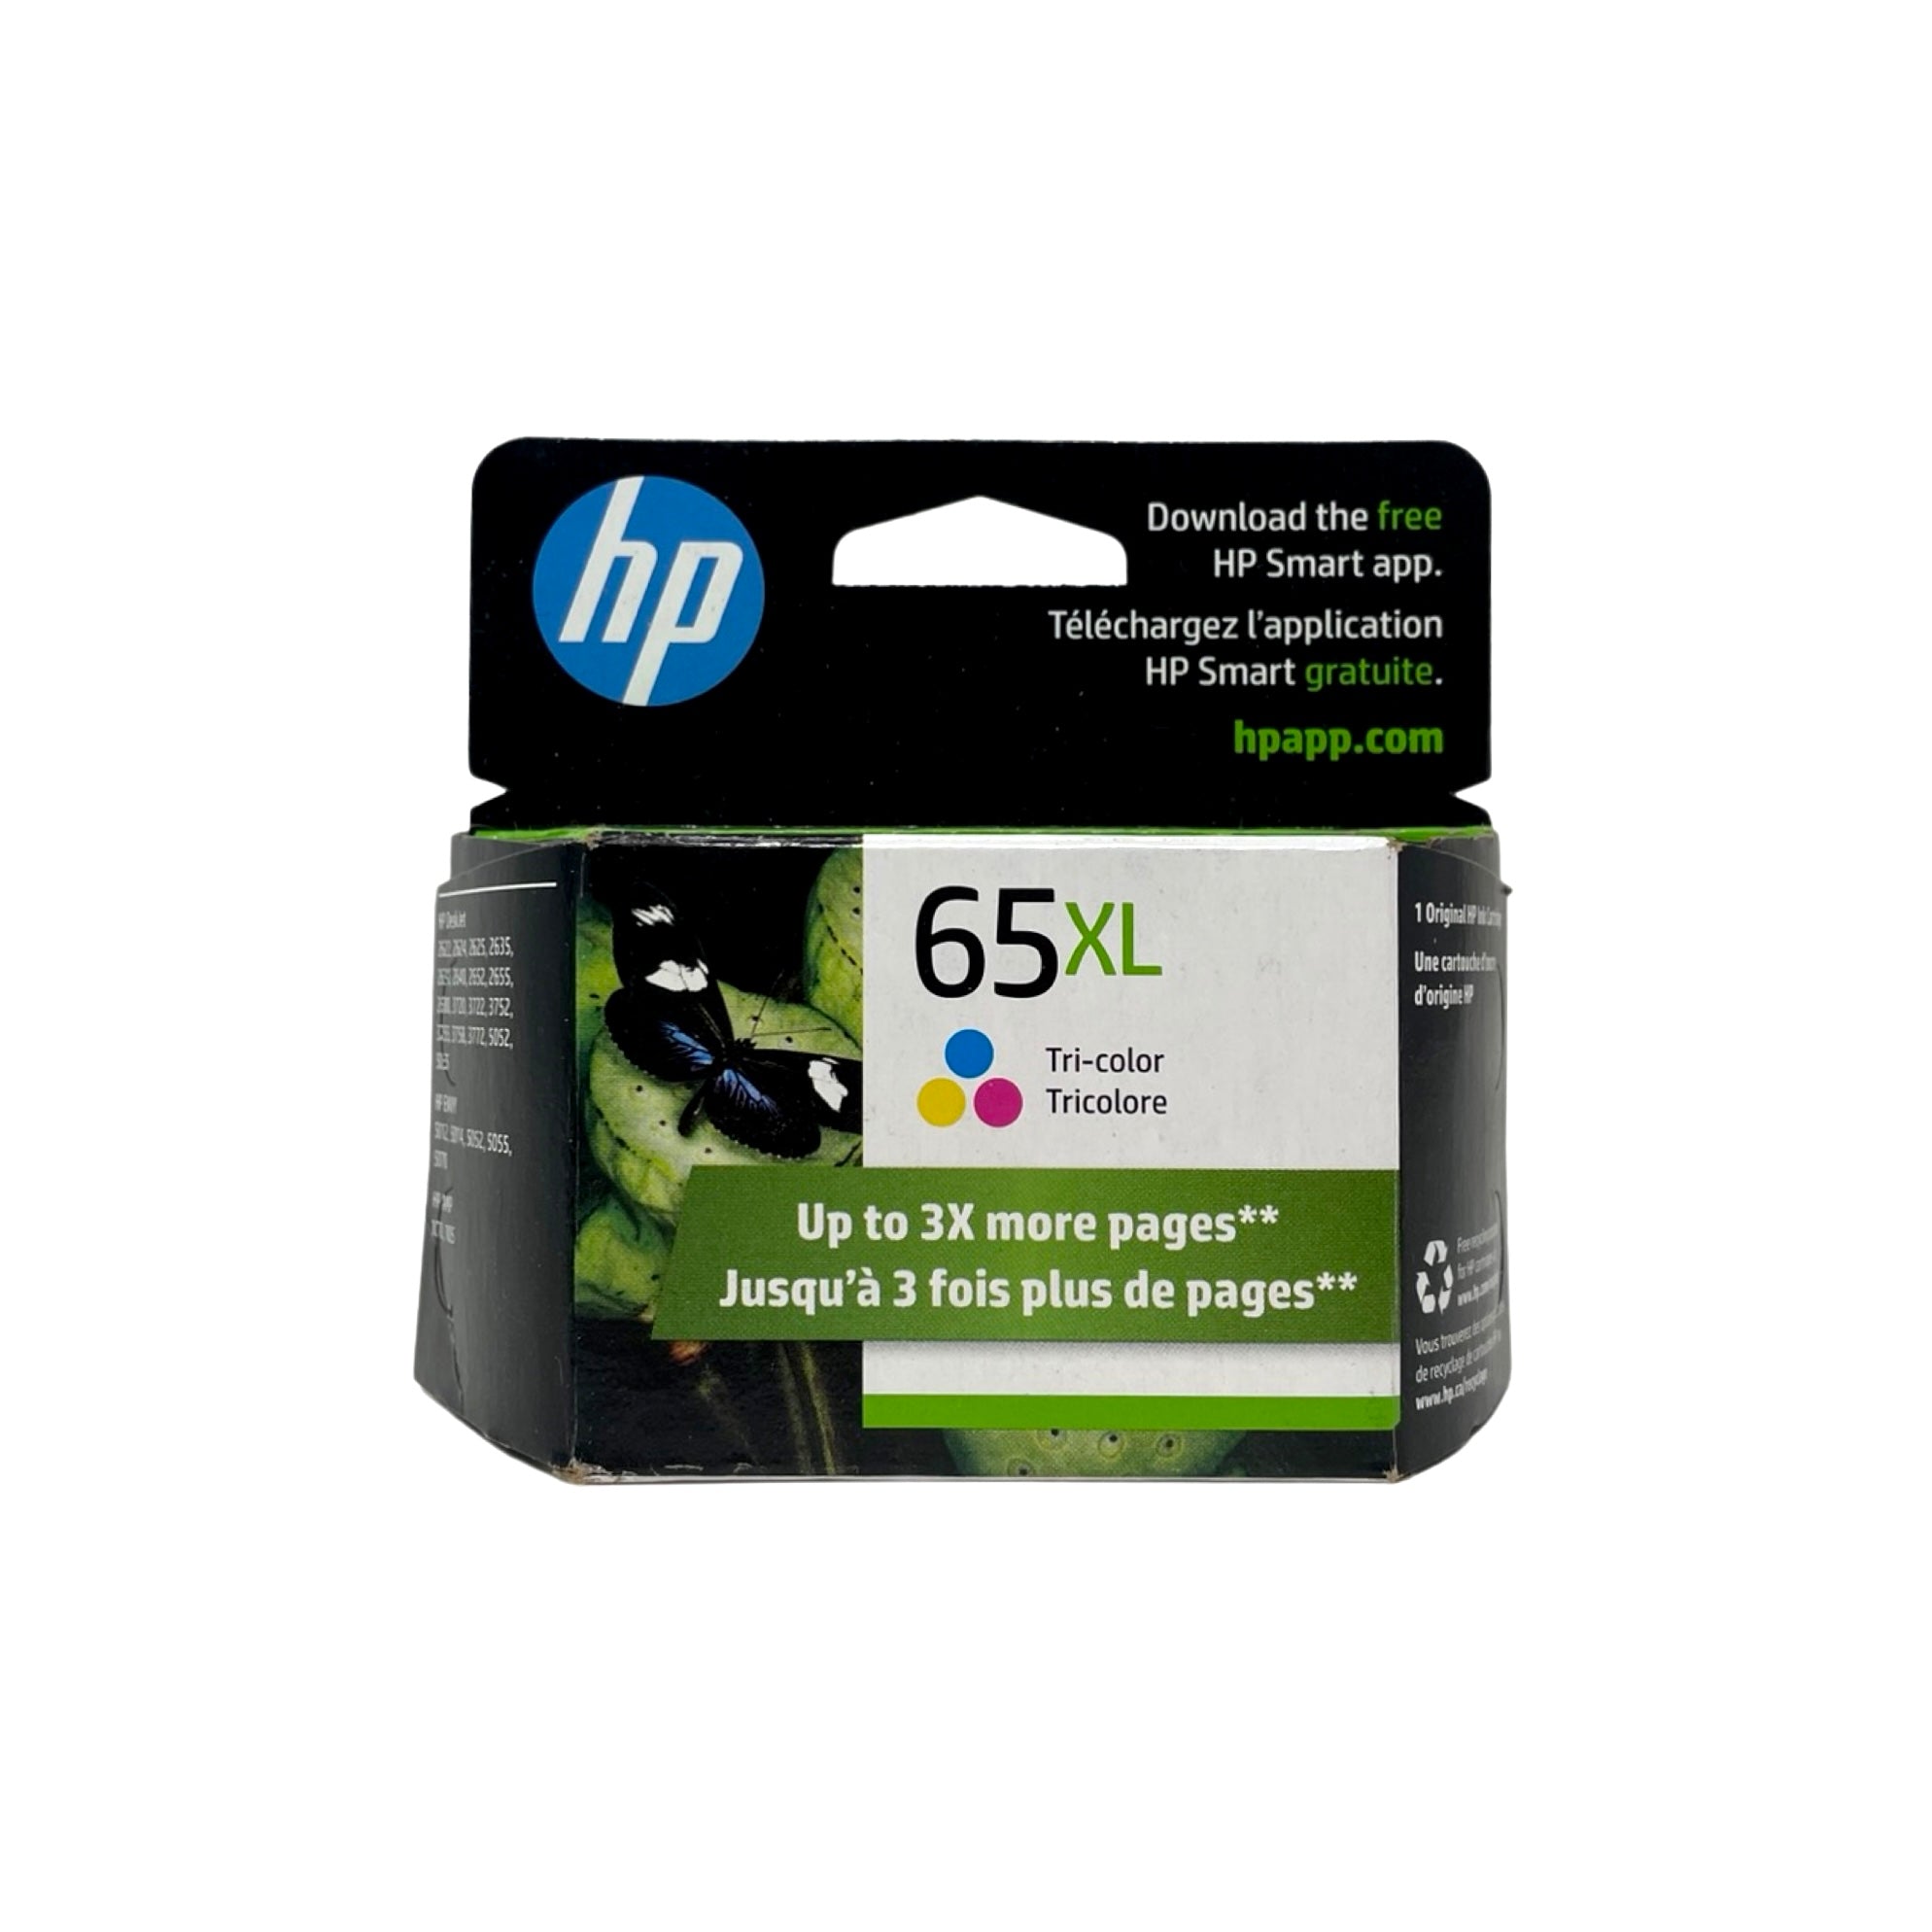 HP 65XL Ink  - Color - Original HP Ink Cartridge - High Yield (N9K03AN